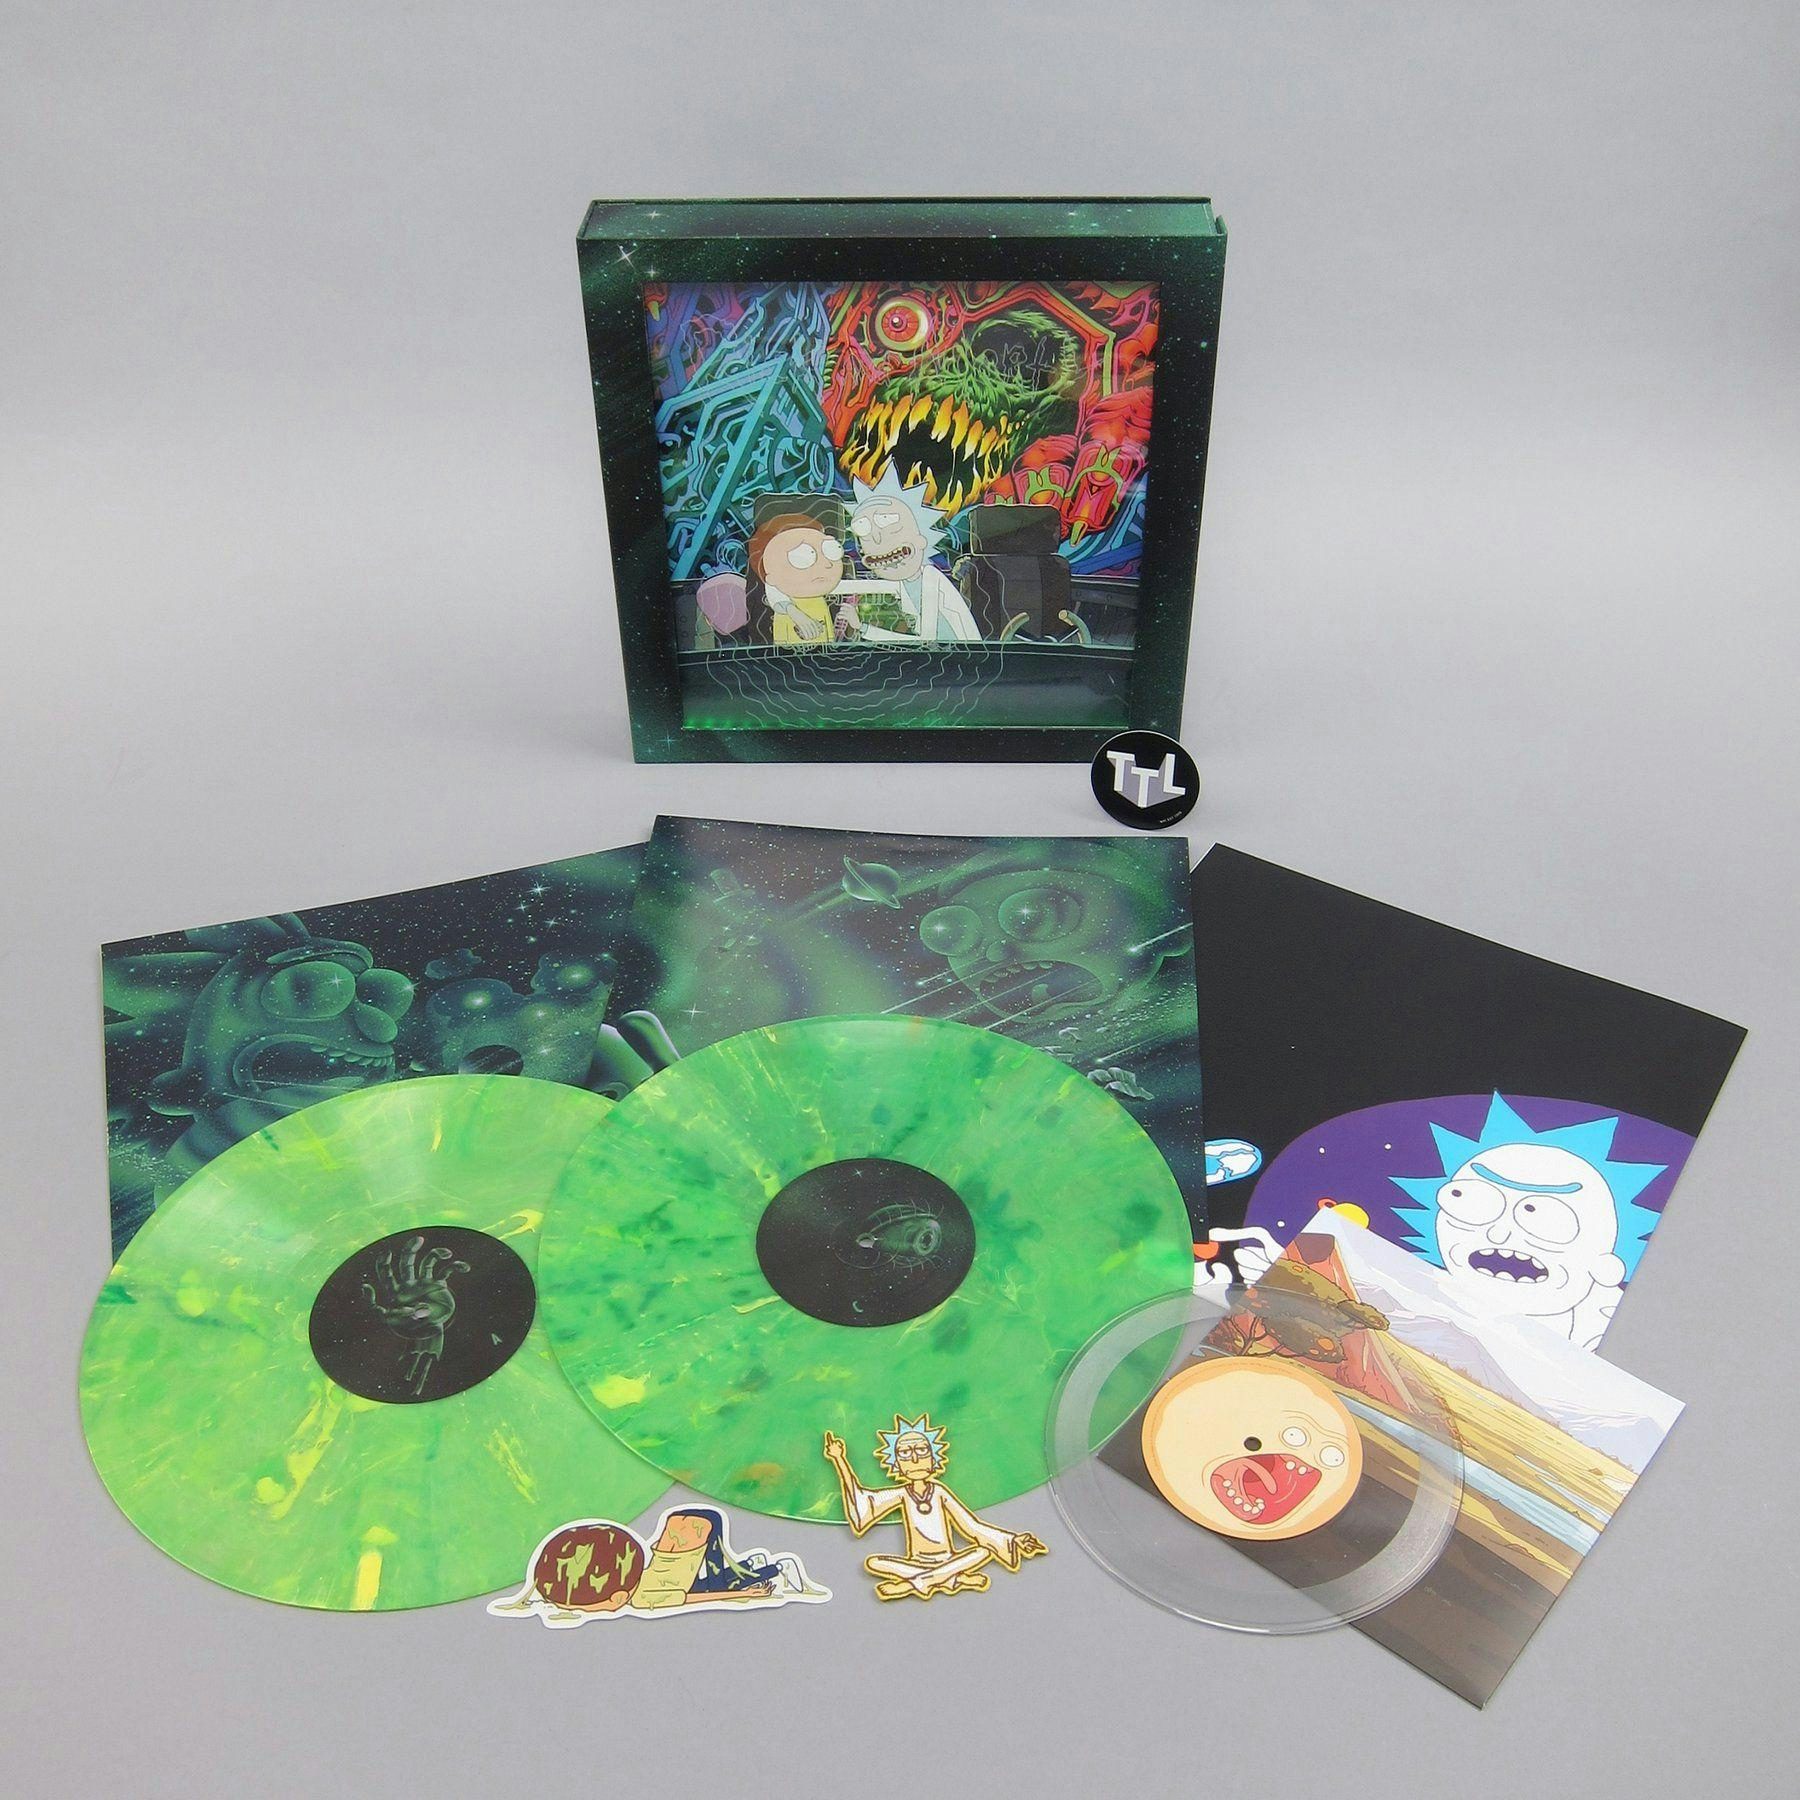 Original Soundtrack Deluxe Edition Colored Vinyl Box Set